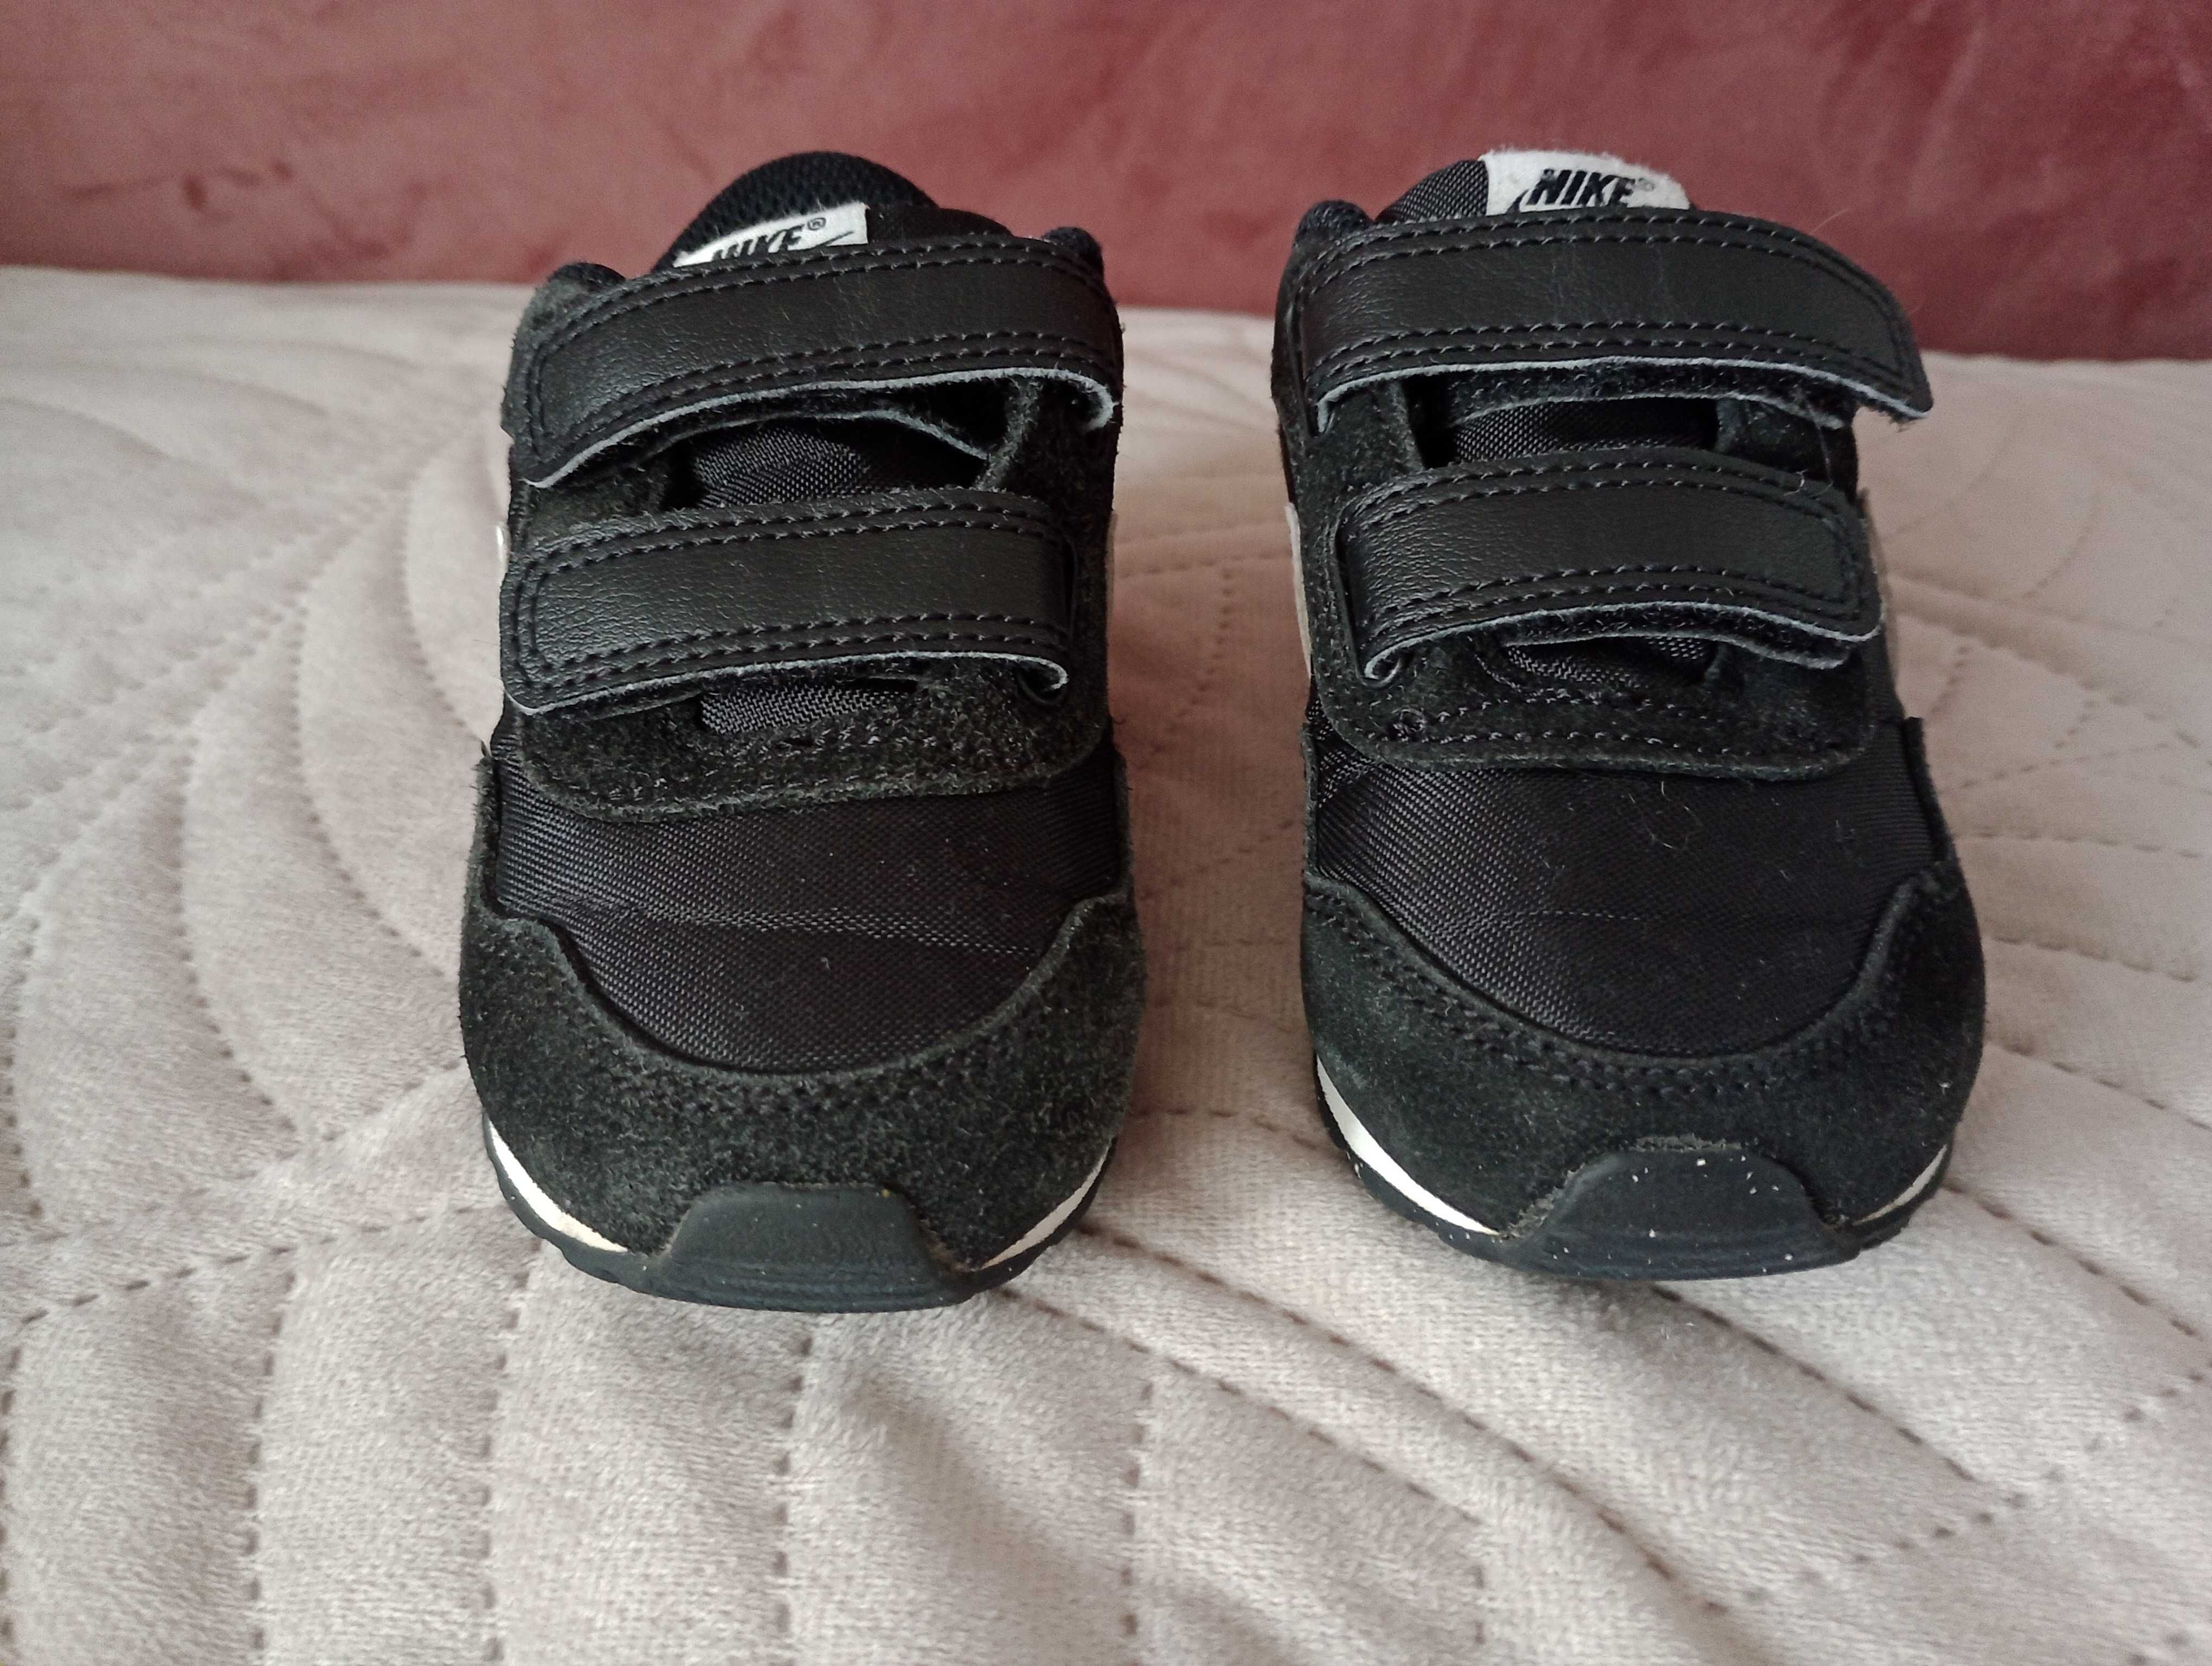 Buty sportowe chłopięce 22 Nike wkładka 14cm CN 8560 buty na rzepy